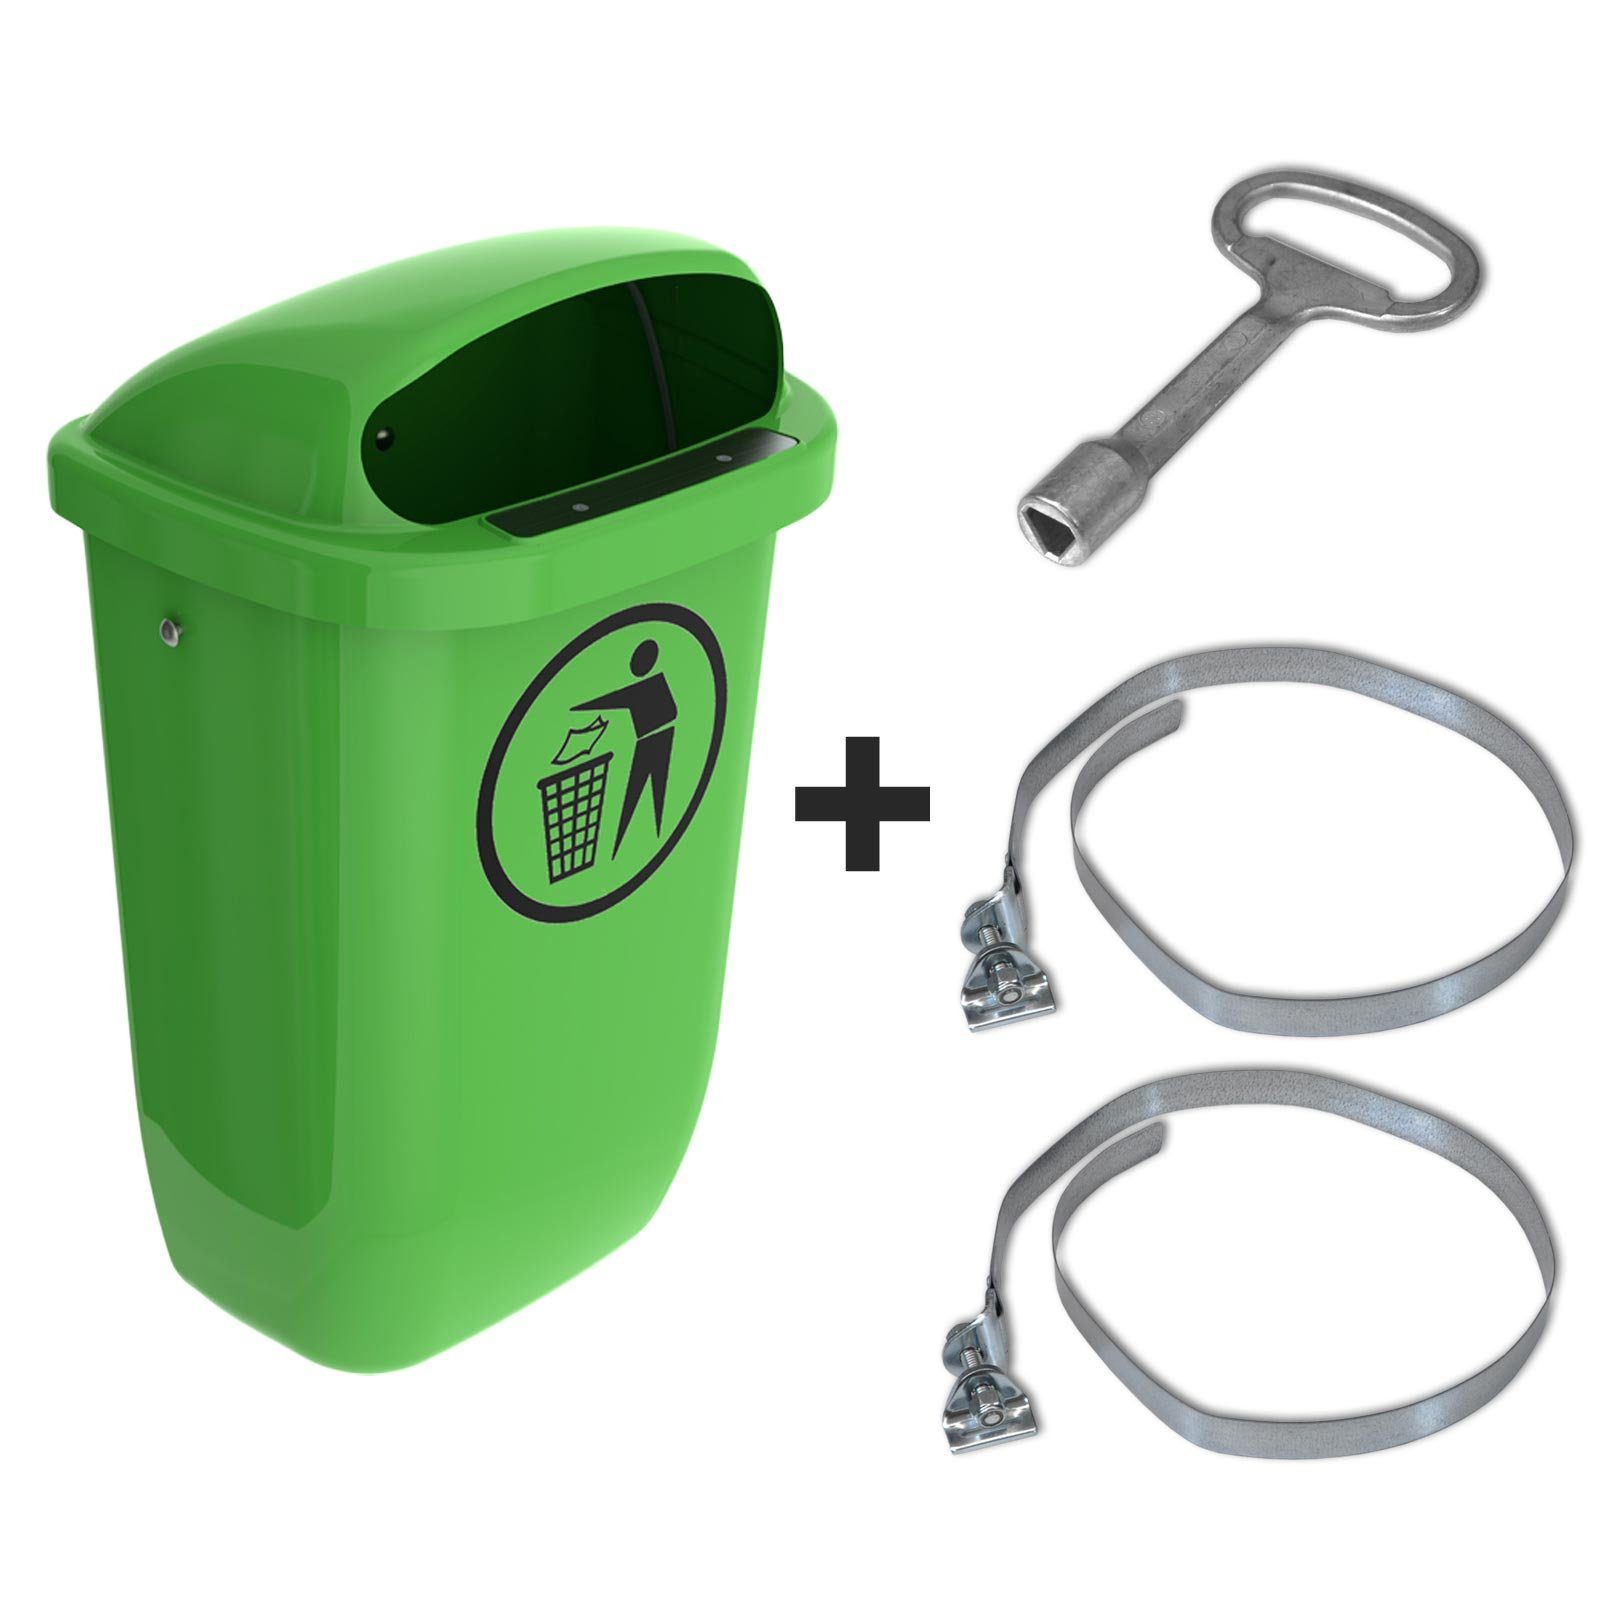 SULO Mülleimer mit Papierkorb Abfallbehälter Original Set Sulo Regenhaube grün